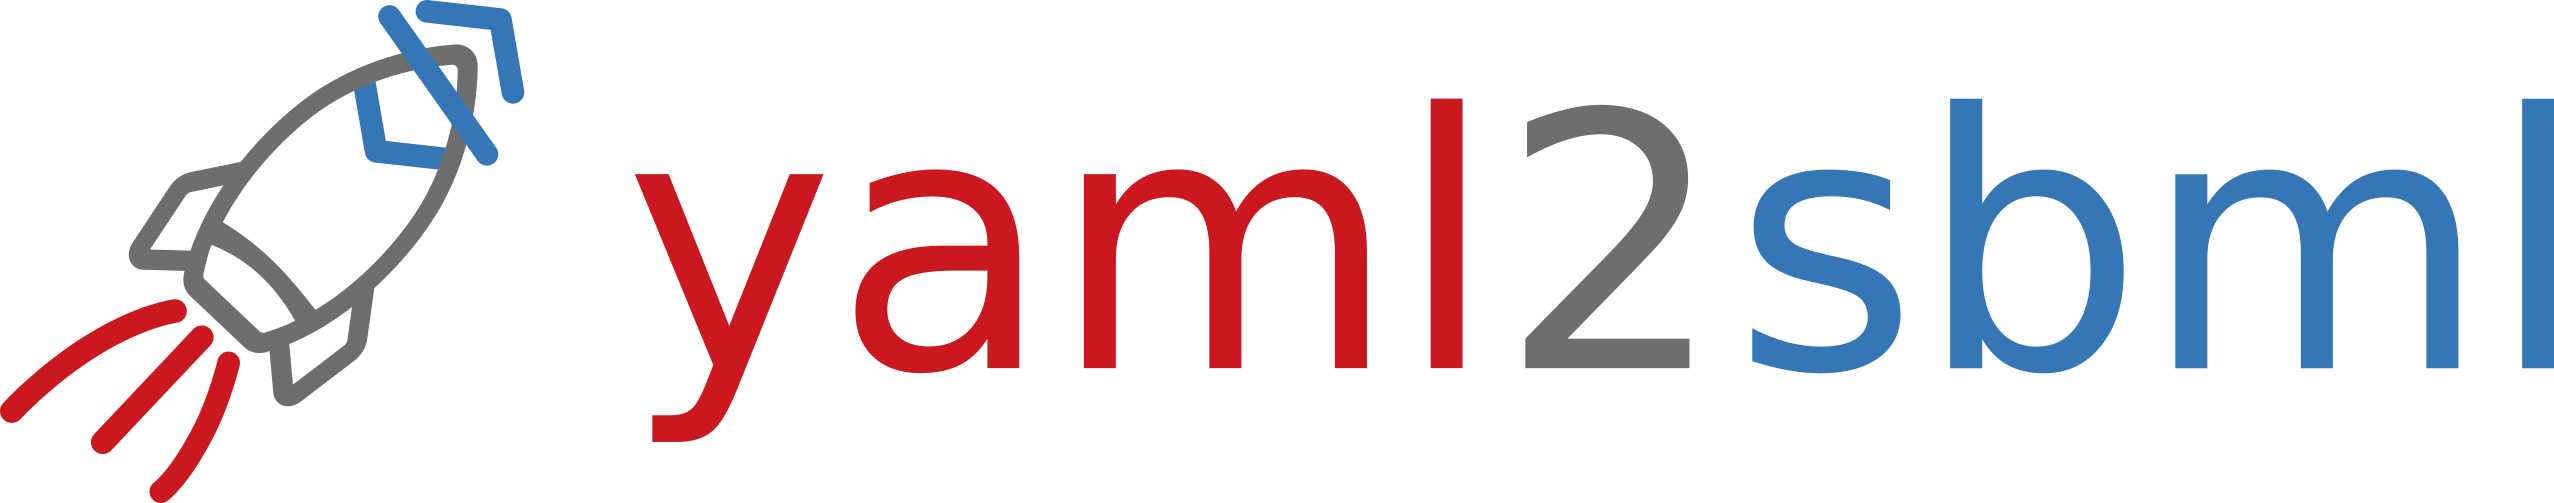 yaml2sbml logo